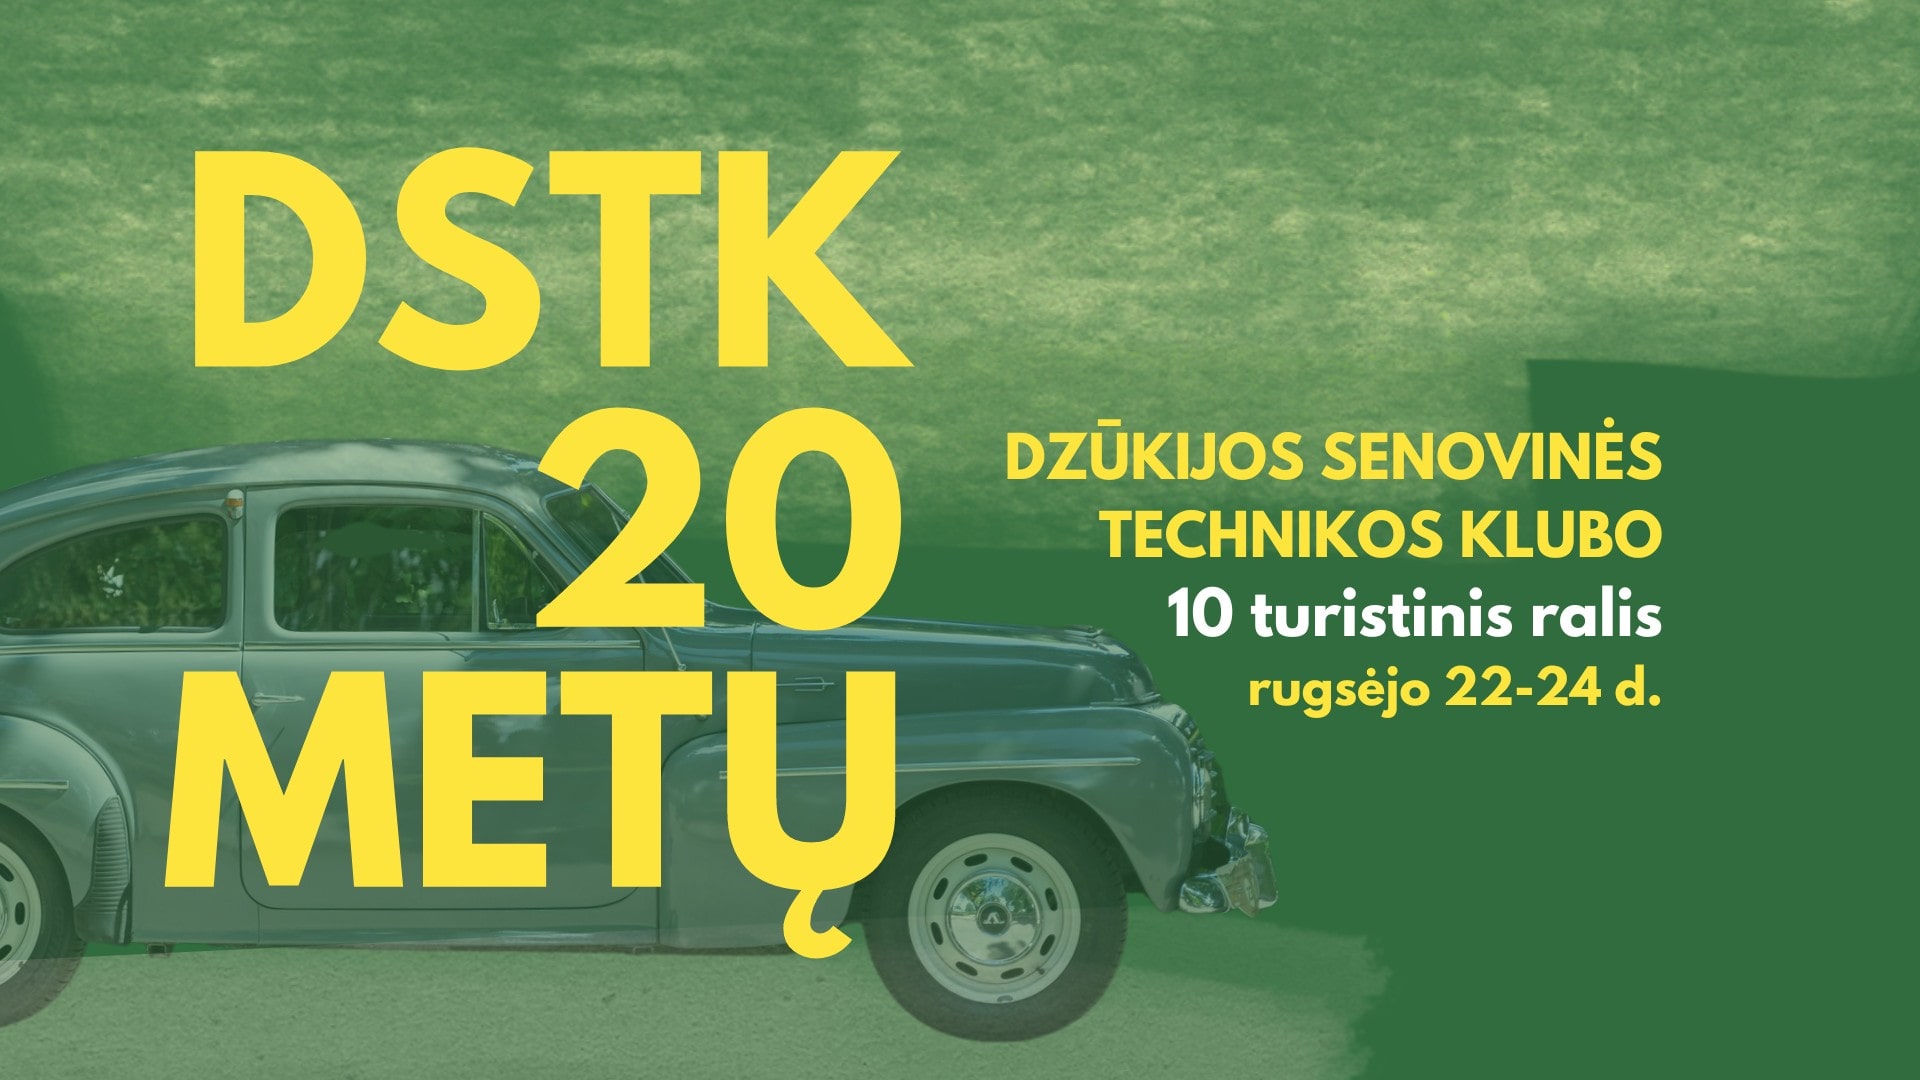 Turistinis ralis - "DSTK 20"